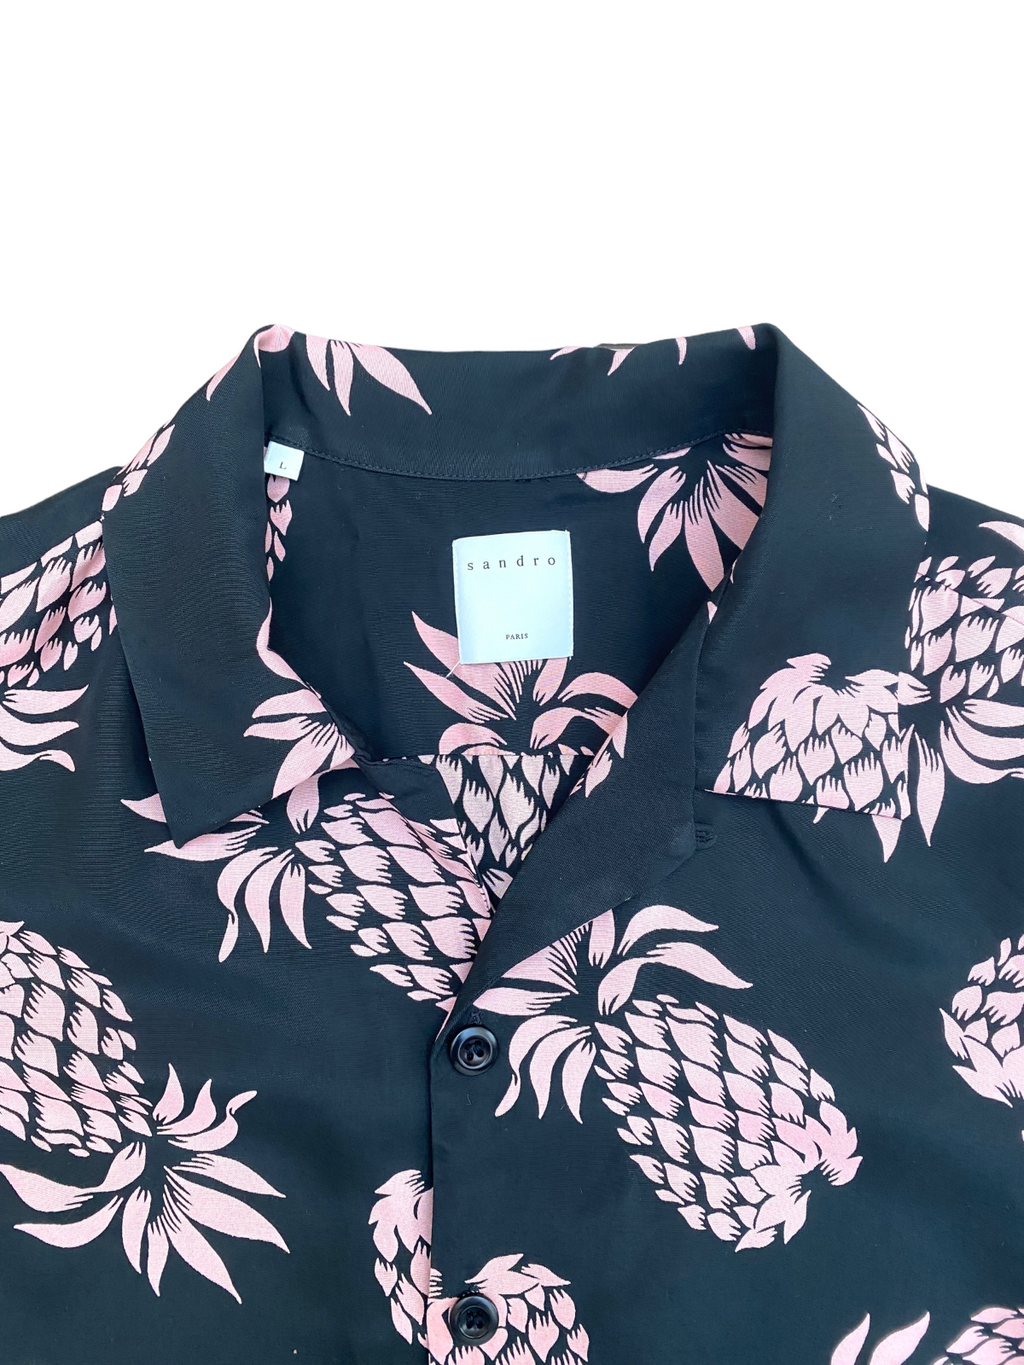 Black / Pink Hawaiian Floral  Short Sleeves Shirt